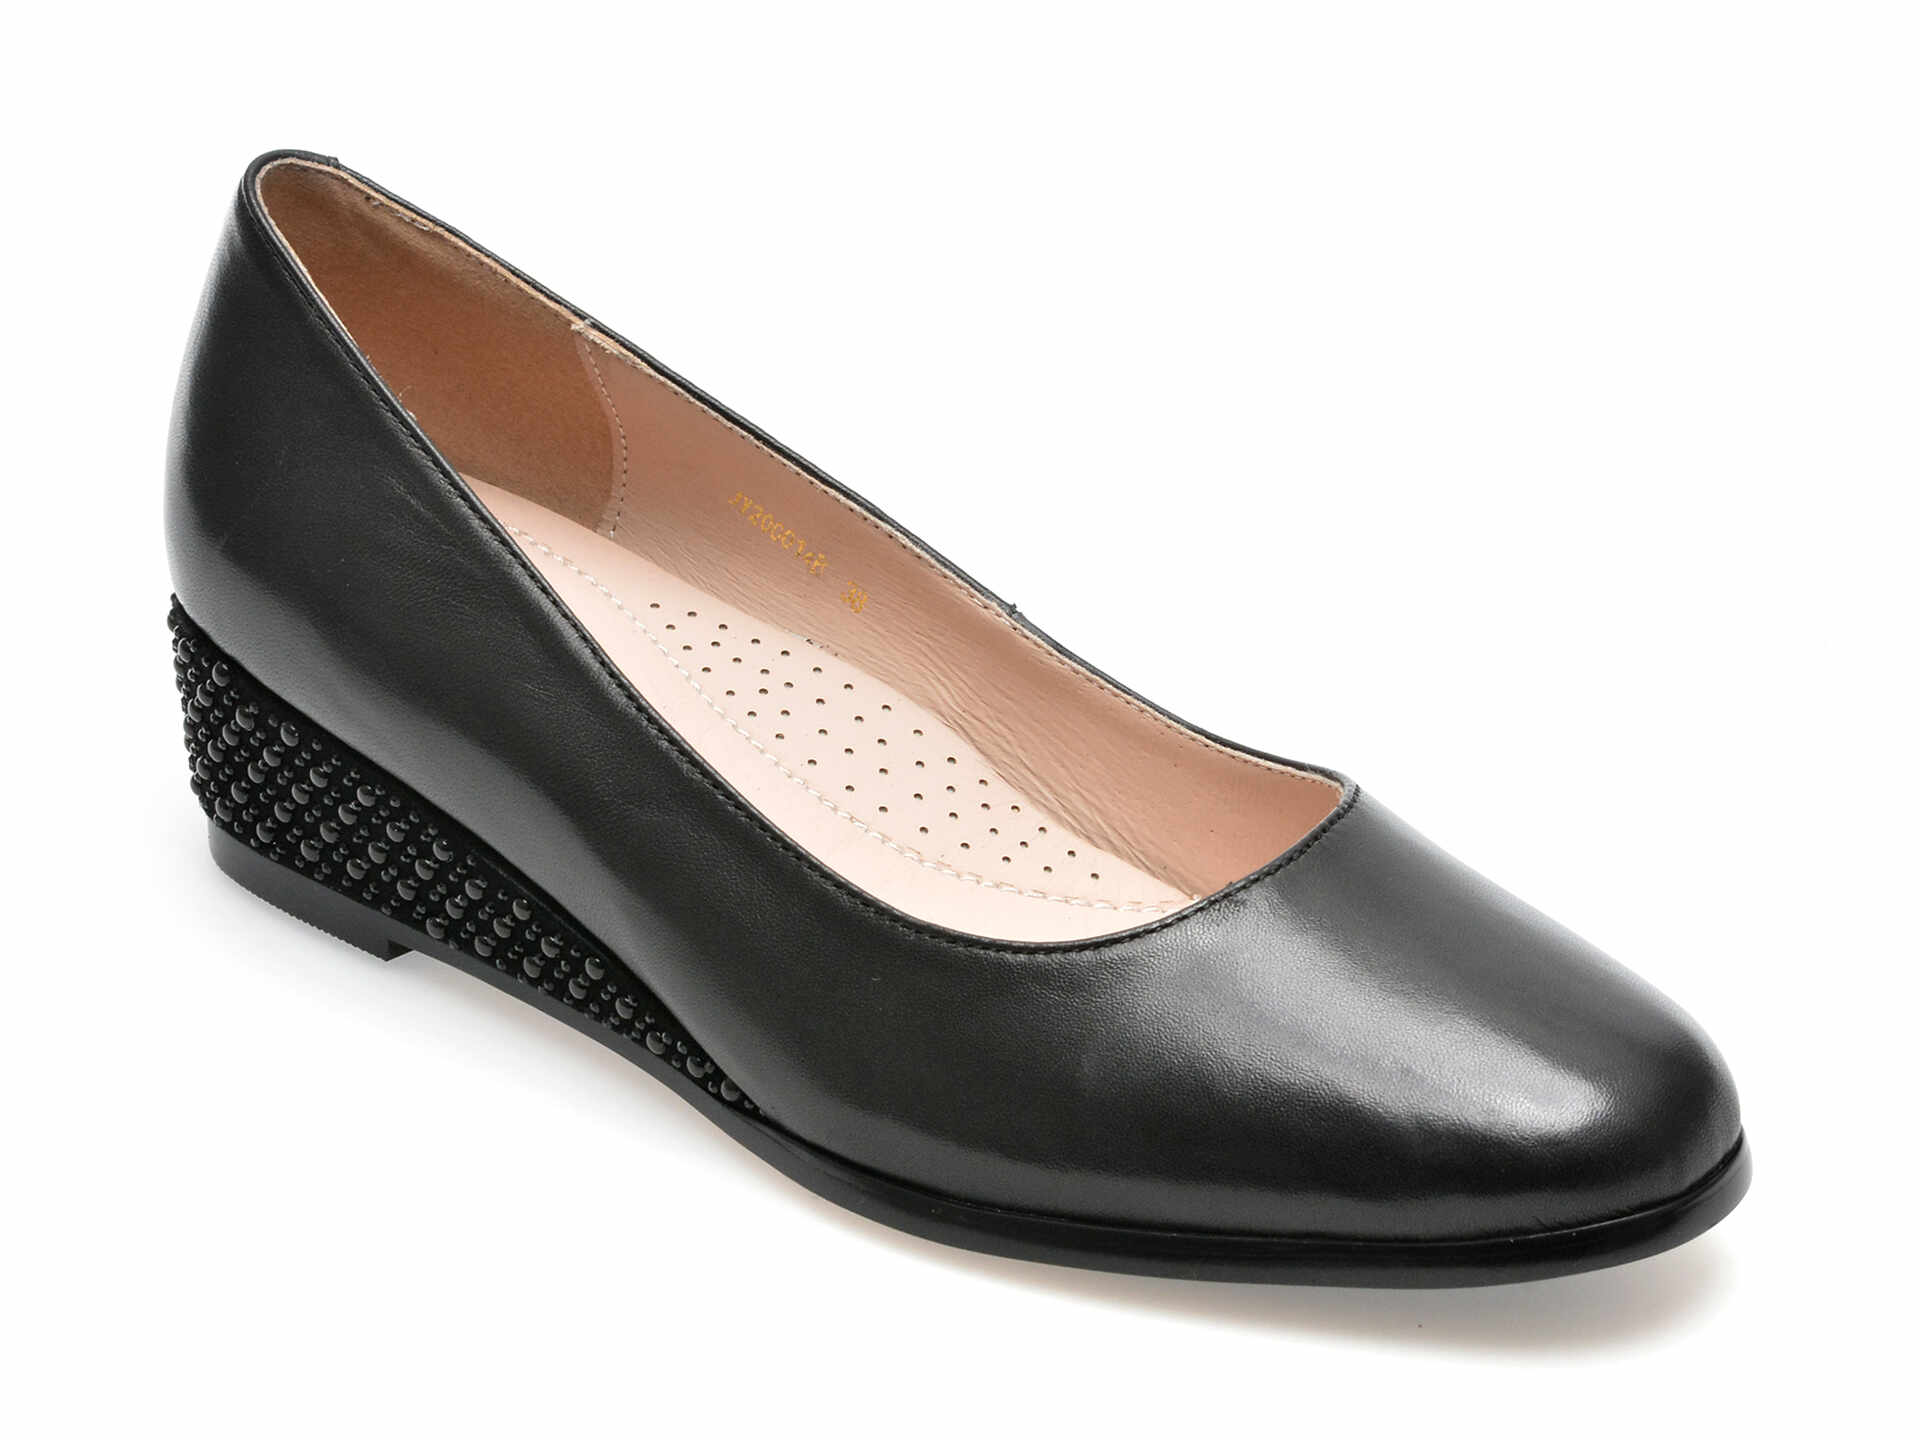 Pantofi EPICA negri, JY20014, din piele naturala